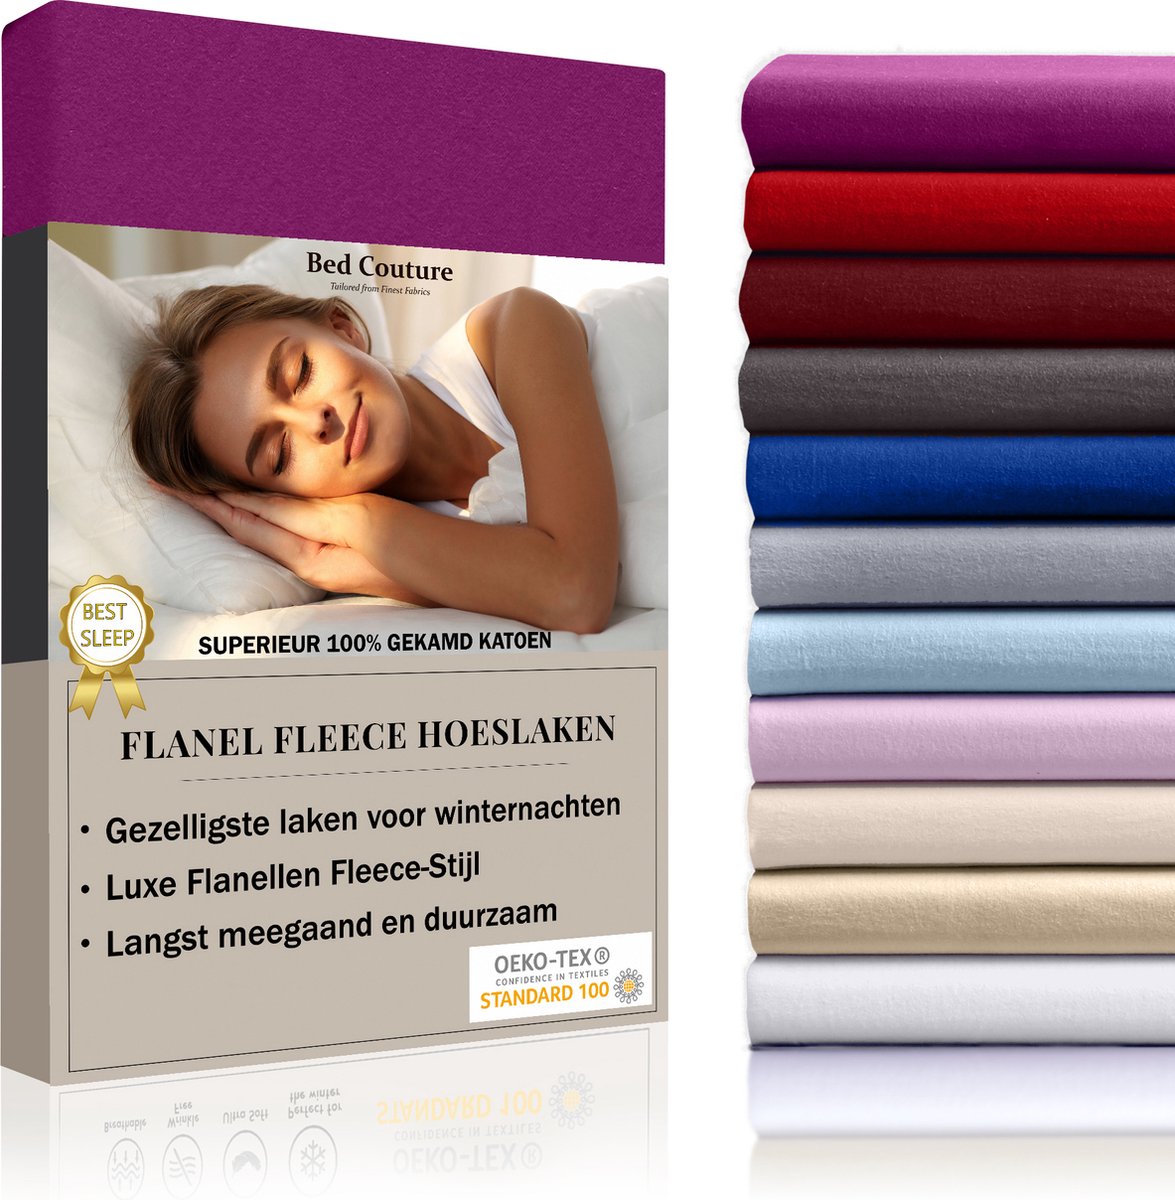 Bed Couture Flanel Fleece Hoeslaken - 100% Katoen Extra zacht en Warm - Tweepersoons - 160x200+30 Cm - Wijn Rood